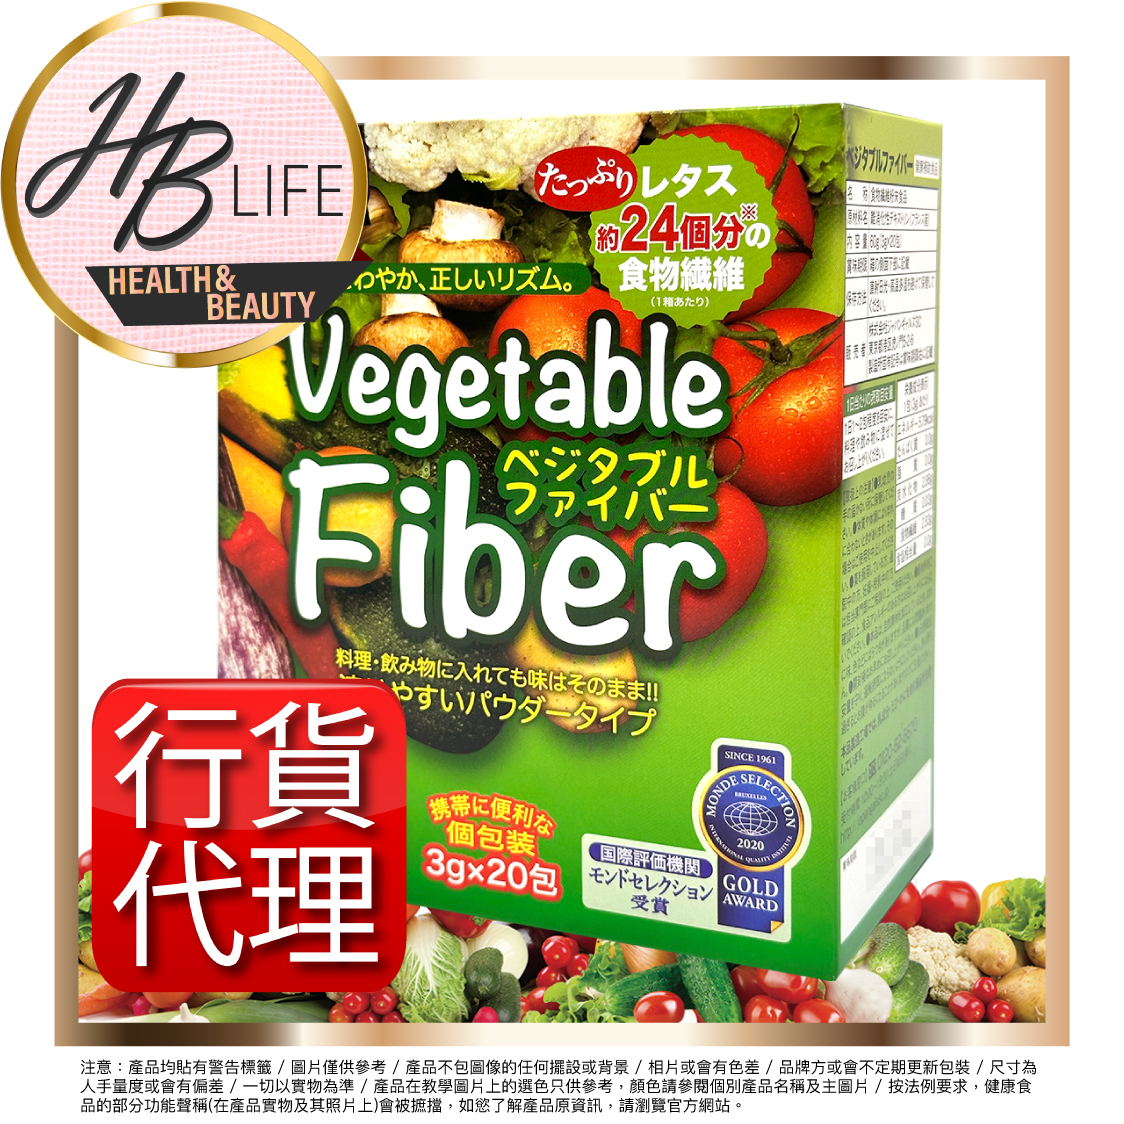 蔬果淨腸瘦身纖維20包(香港代理 2020)